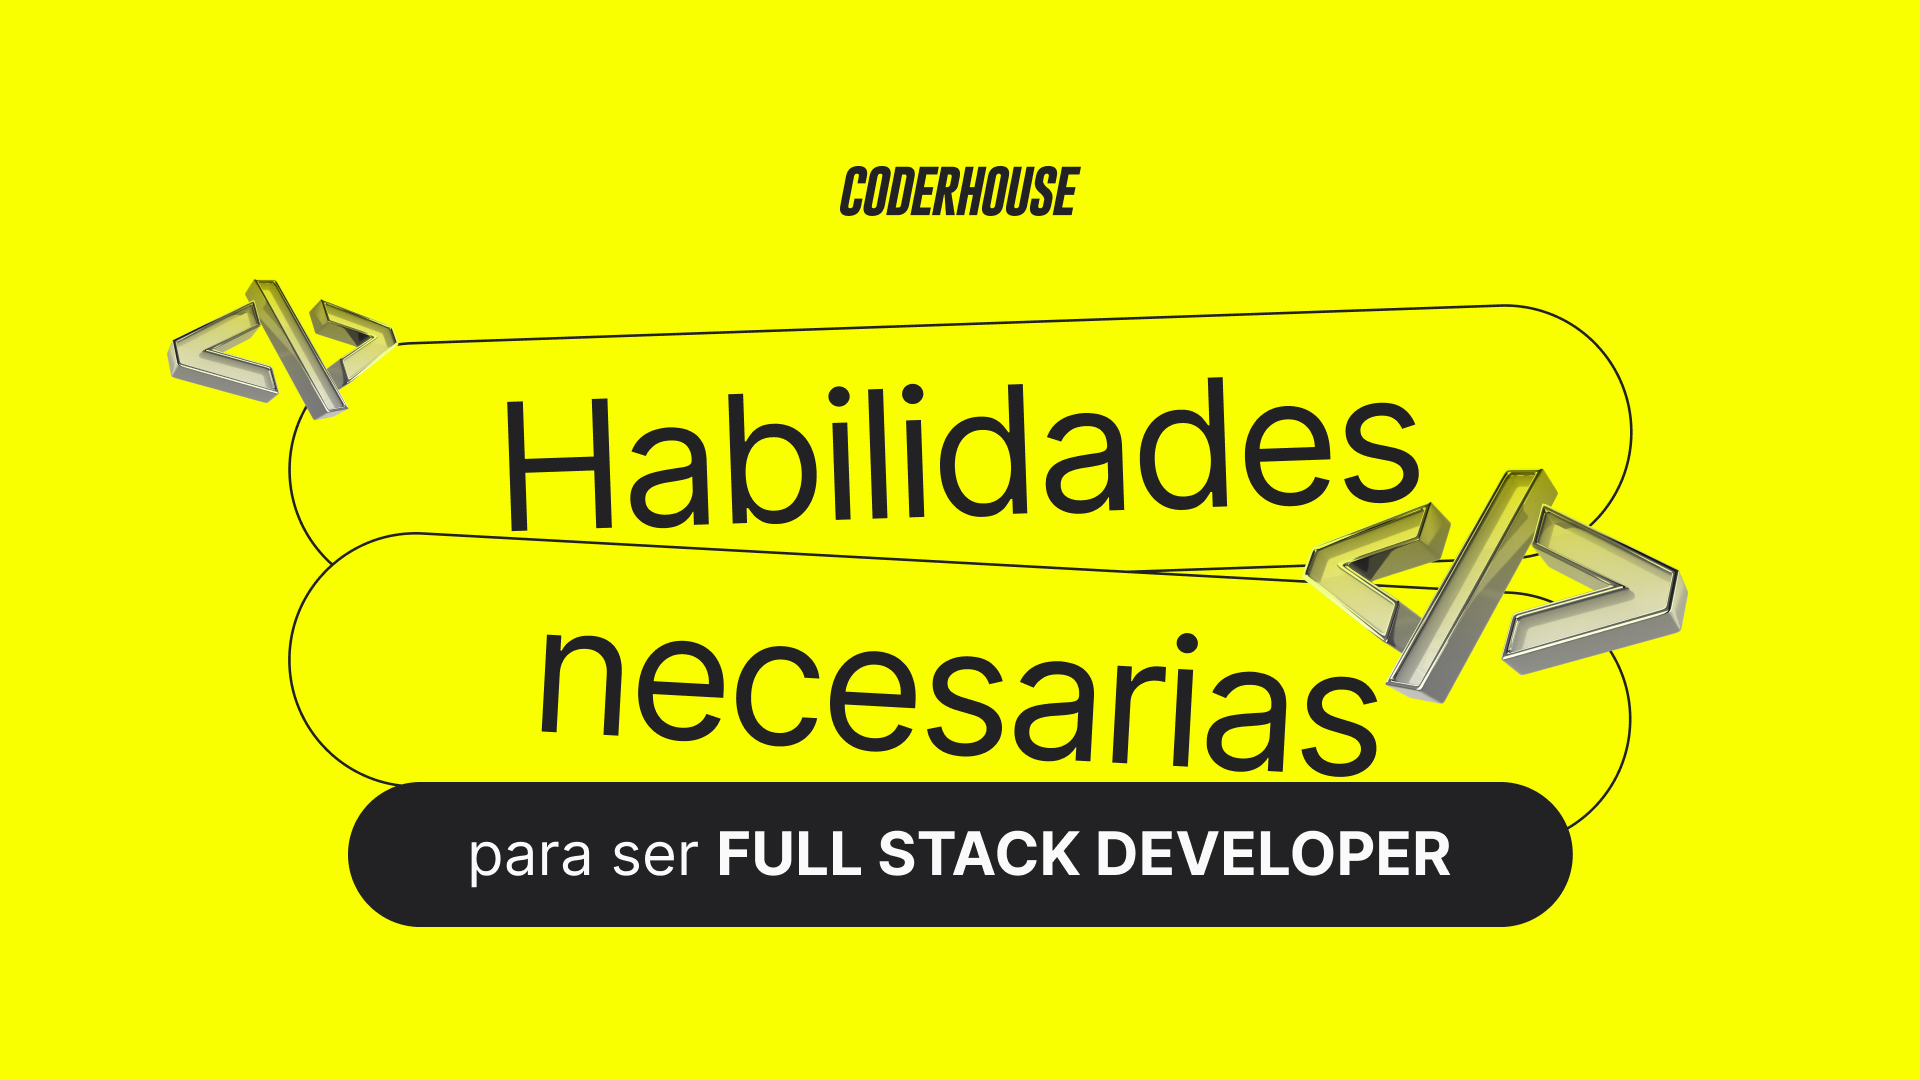 Descubre las habilidades esenciales de un Full Stack Developer